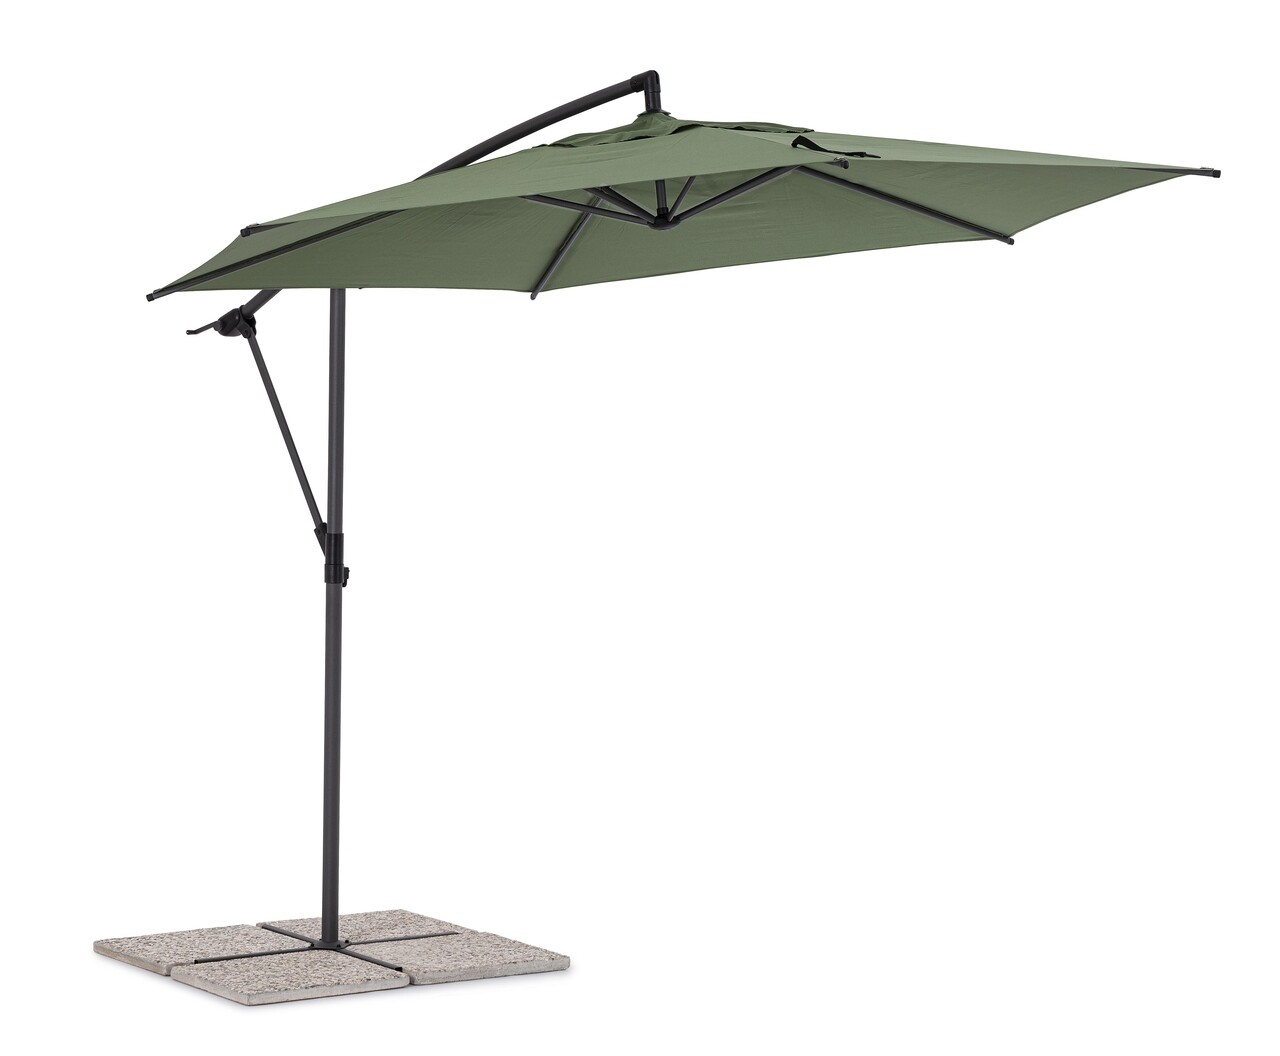 Tropea Terasz/kerti napernyő, Bizzotto, Ø 300 cm, oszlop Ø 46-48 mm, acél/poliészter, olíva zöld